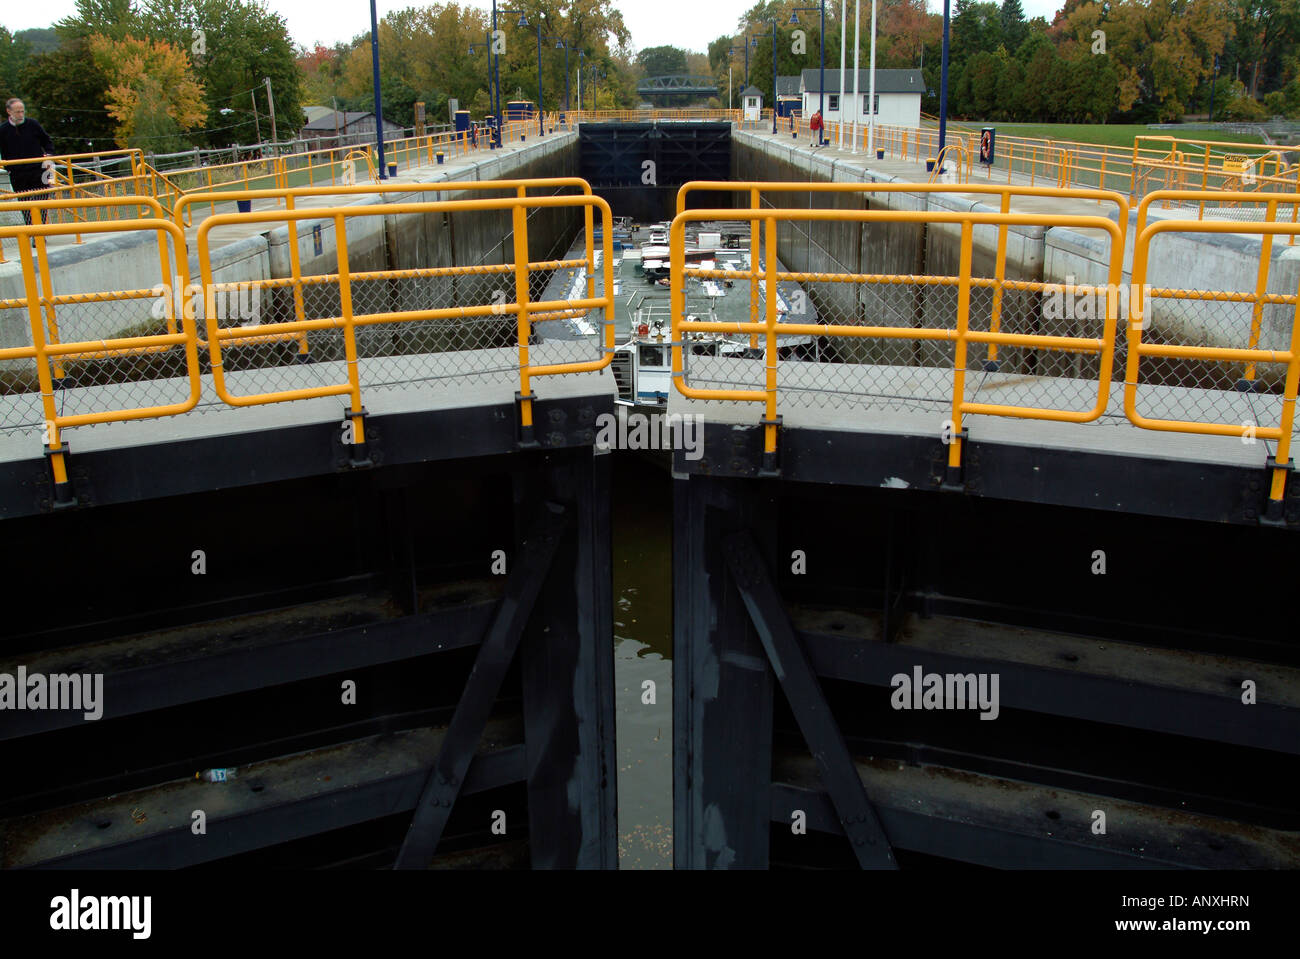 Erie Canal Waterford New York NY sur ouverture de porte verrou pour permettre de passer d'un navire sur le canal Banque D'Images